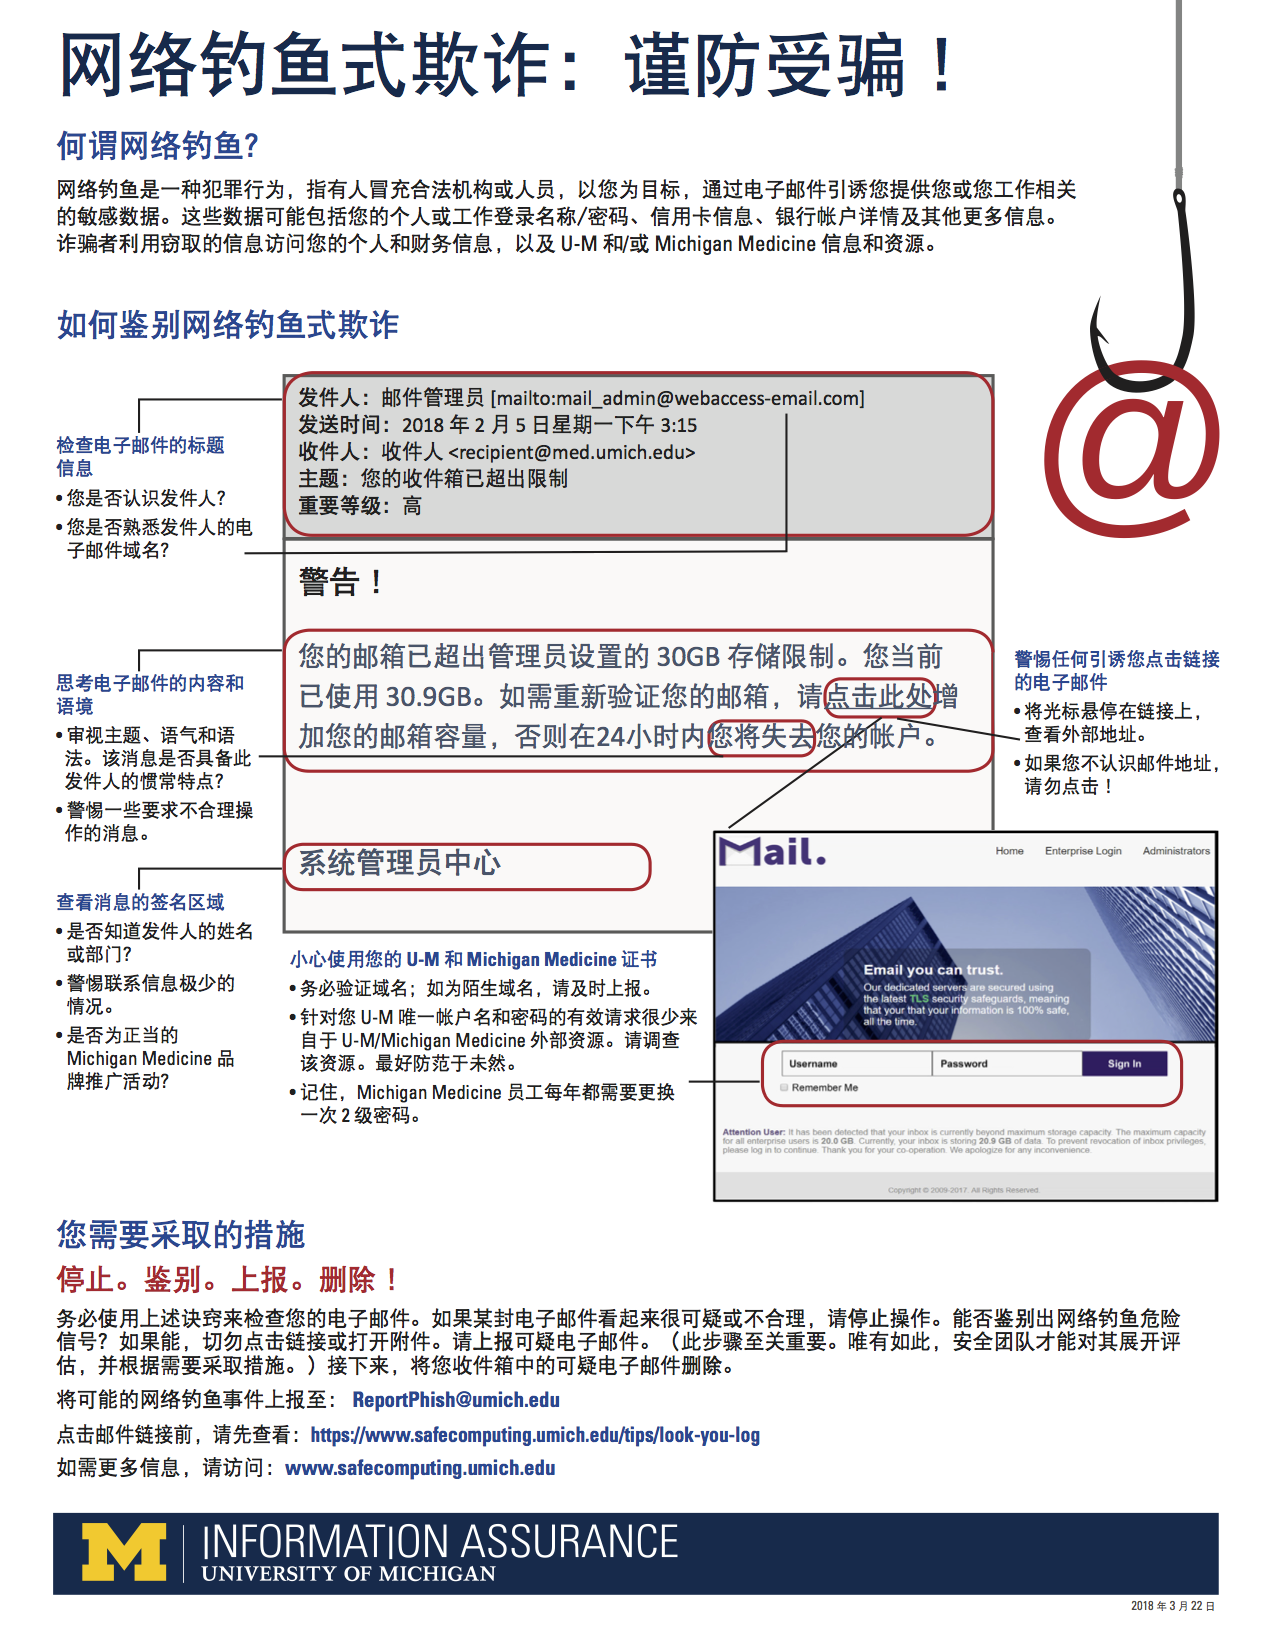 Image of anti-phishing tip sheet in Mandarin